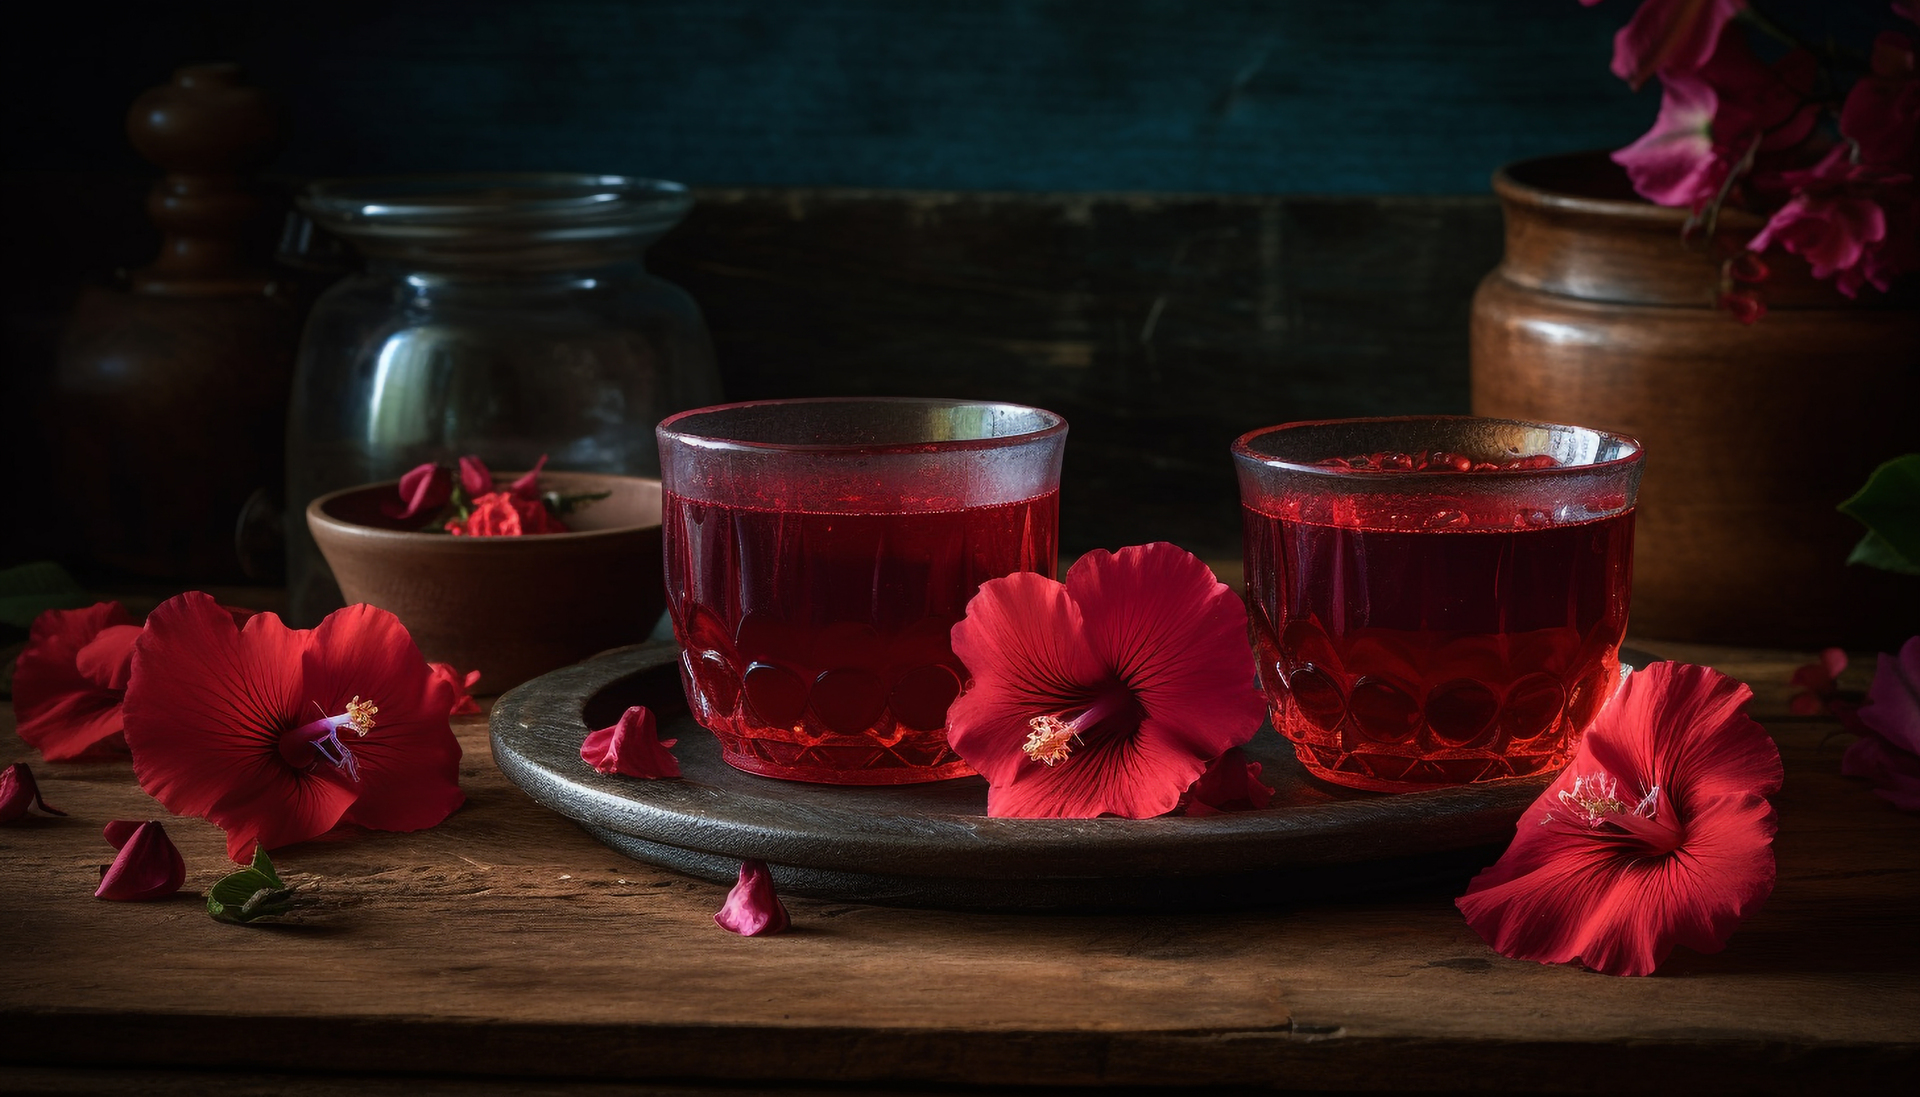 Na tym obrazku możemy podziwiać elegancką filiżankę wypełnioną delikatnym naparem z czerwonokrzewu, który emanuje ciepłem i przyjemnym aromatem. Złocisty kolor herbaty pięknie kontrastuje z porcelanową filiżanką, tworząc harmonijną kompozycję. Ta odżywcza herbata z czerwonokrzewu jest znana ze swoich właściwości antyoksydacyjnych i łagodzących, co czyni ją idealnym napojem do relaksu i regeneracji po długim dniu